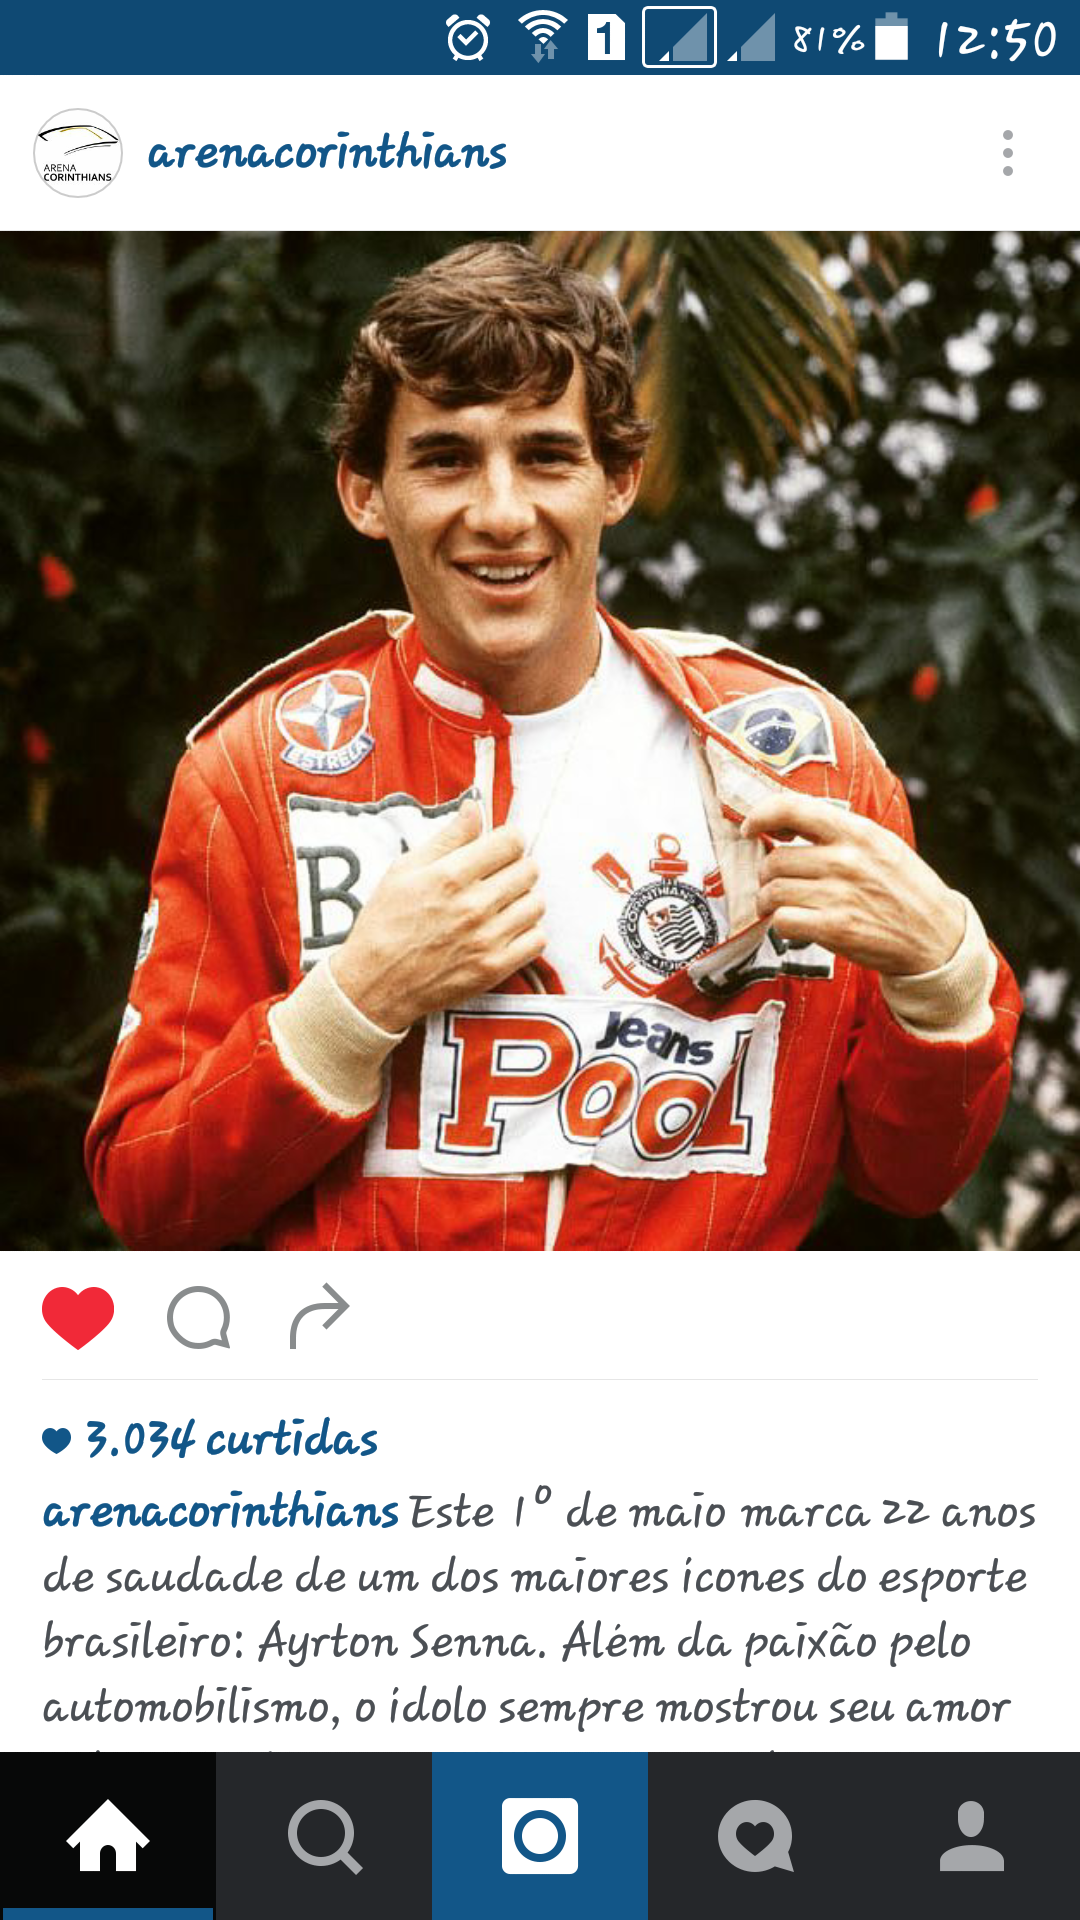 Arena Ayrton Senna